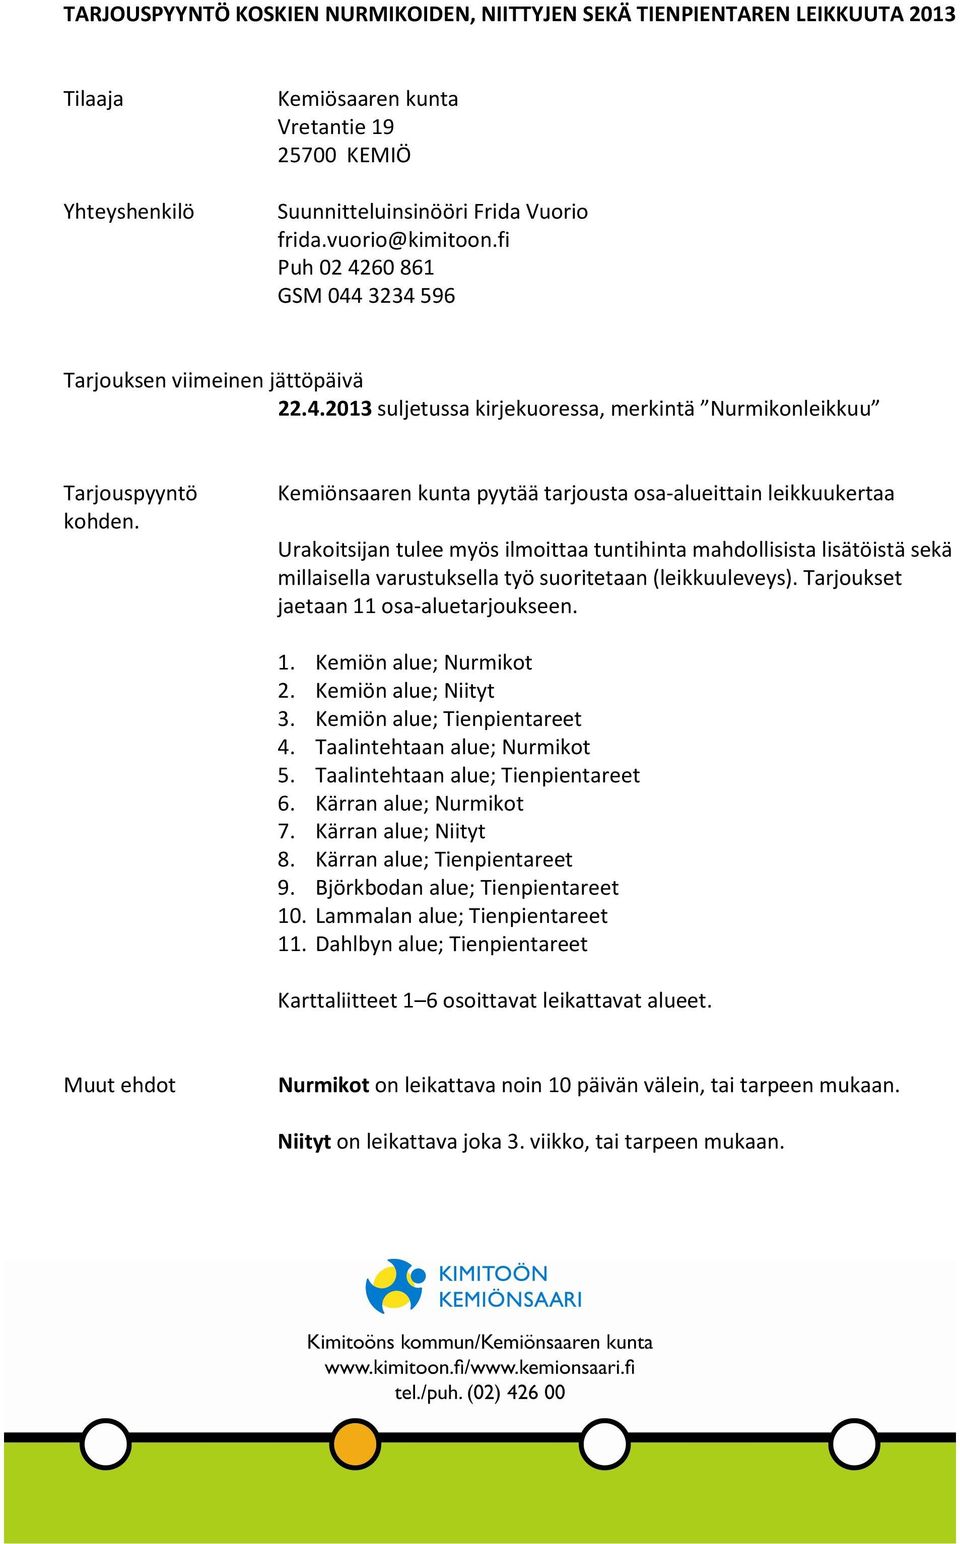 Kemiönsaaren kunta pyytää tarjousta osa-alueittain leikkuukertaa Urakoitsijan tulee myös ilmoittaa tuntihinta mahdollisista lisätöistä sekä millaisella varustuksella työ suoritetaan (leikkuuleveys).